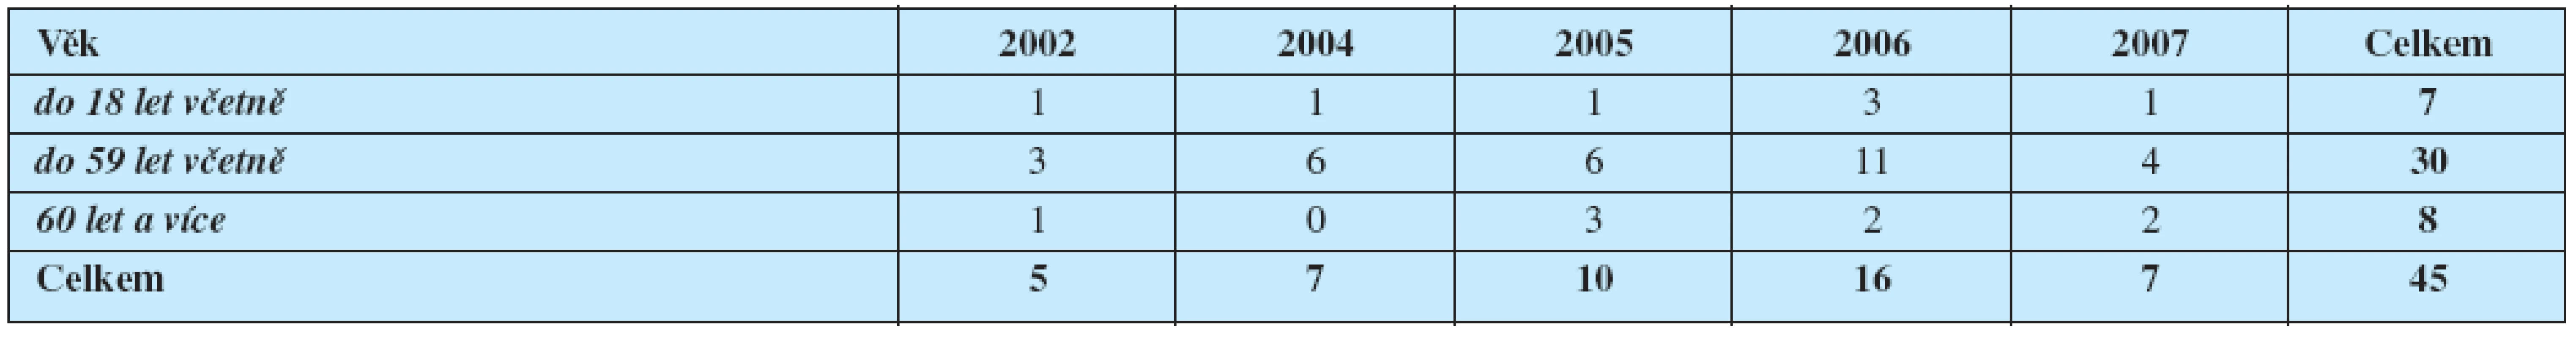 Četnost onemocnění klíšťovou encefalitidou v kmeni pojištěnců HZP (období r. 2002-2007)